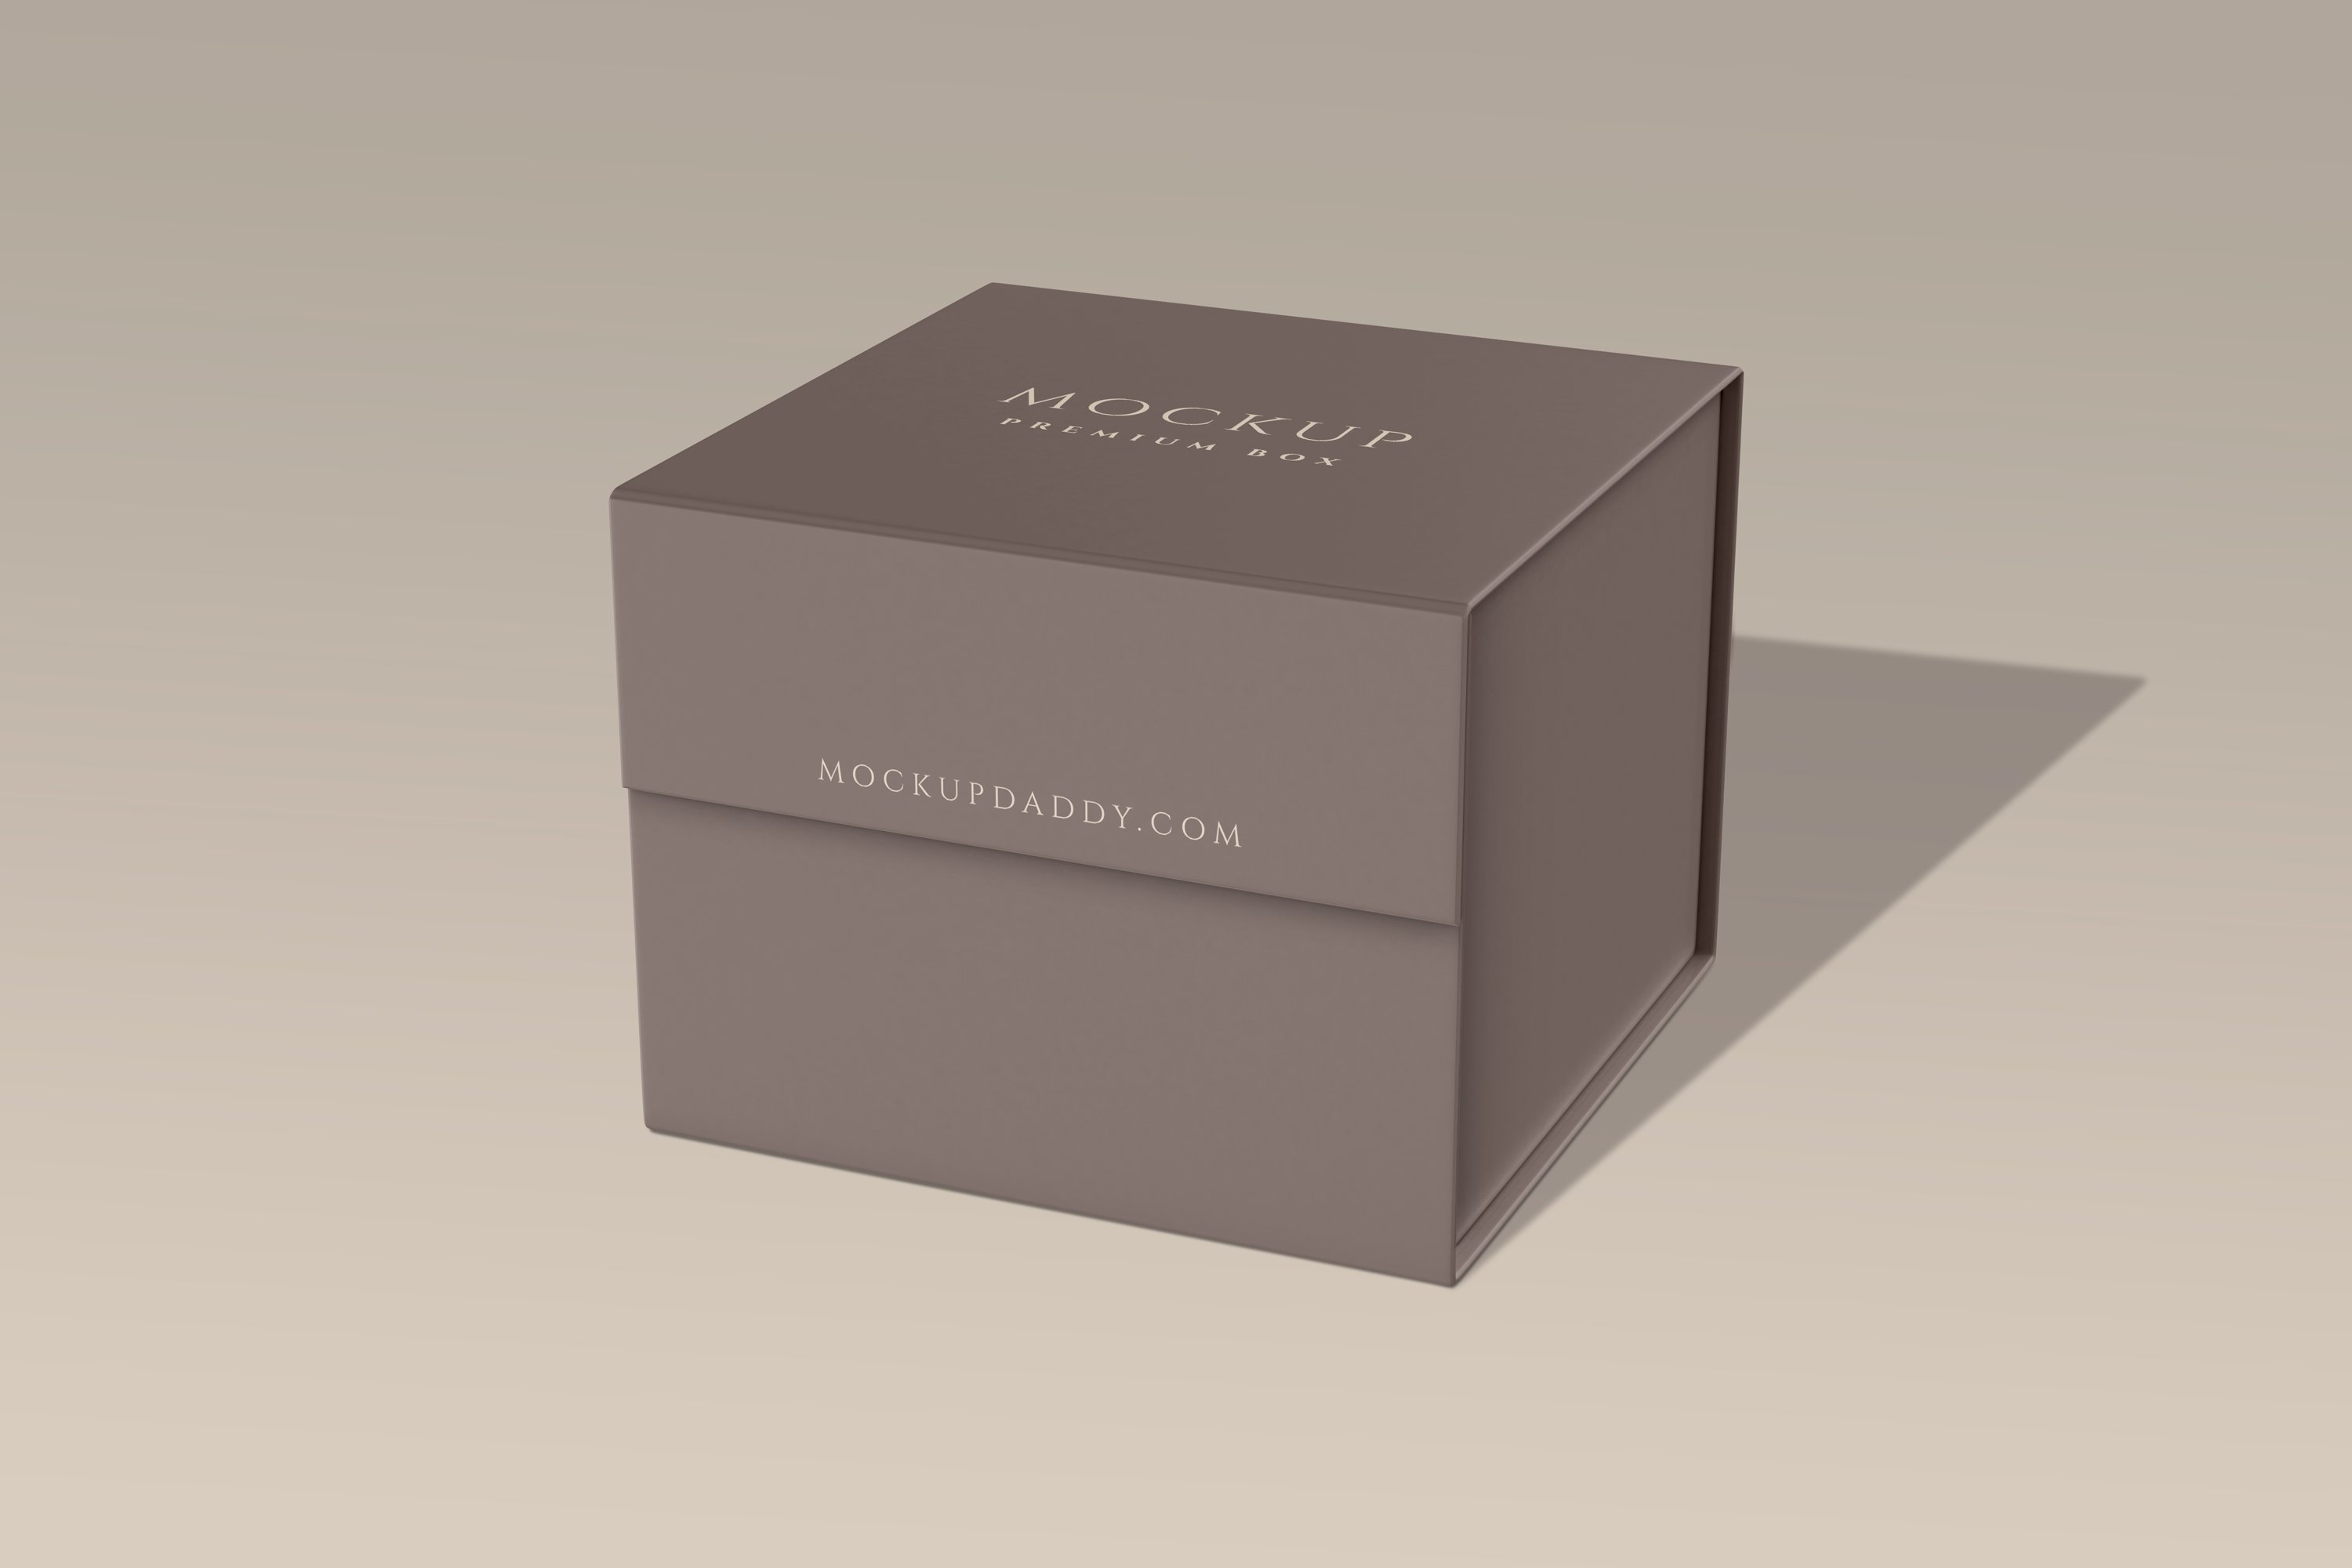 Small Square Premium Box Mockup cover image.